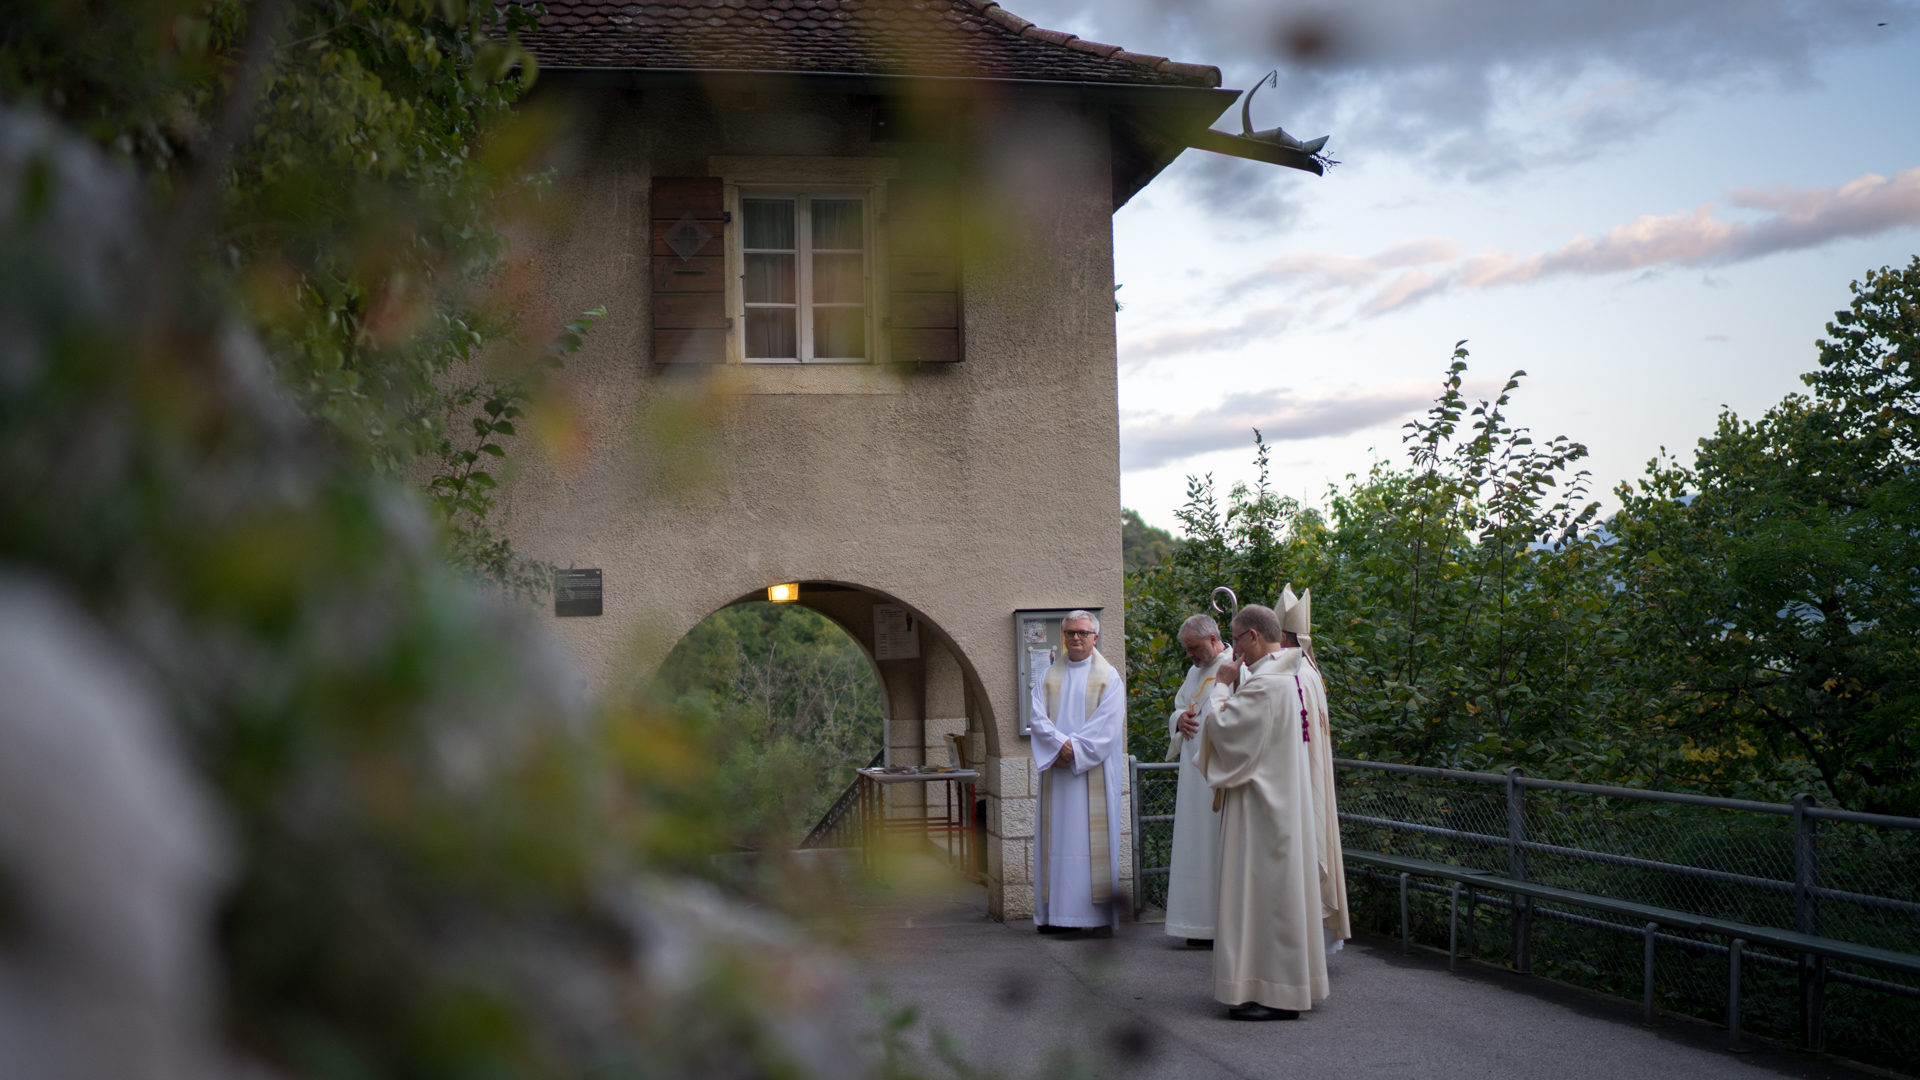 Le sanctuaire marial jurassien devient le centre spirituel d'une grande retraite: la "semaine du Vorbourg" (Photo: Pierre Pistoletti)